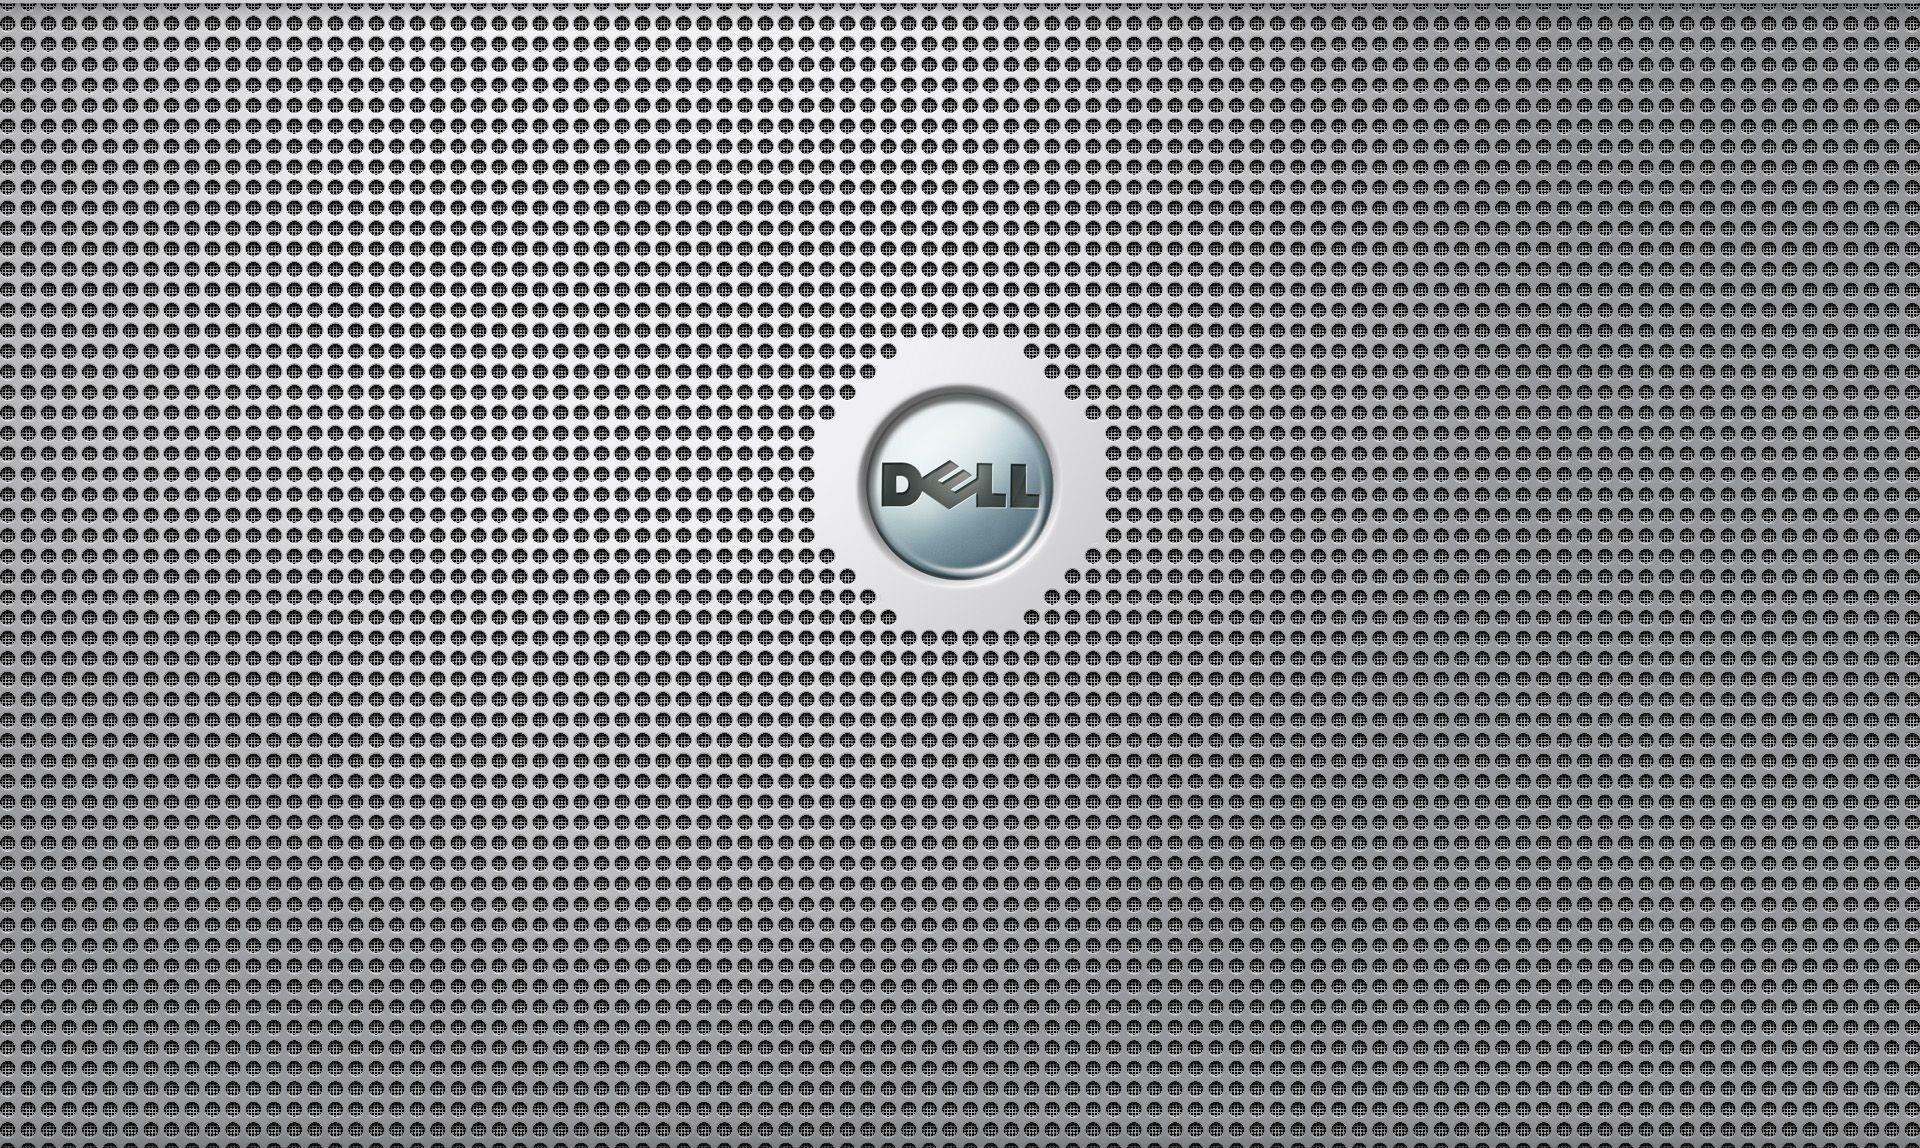 Full HD Dell Wallpaper